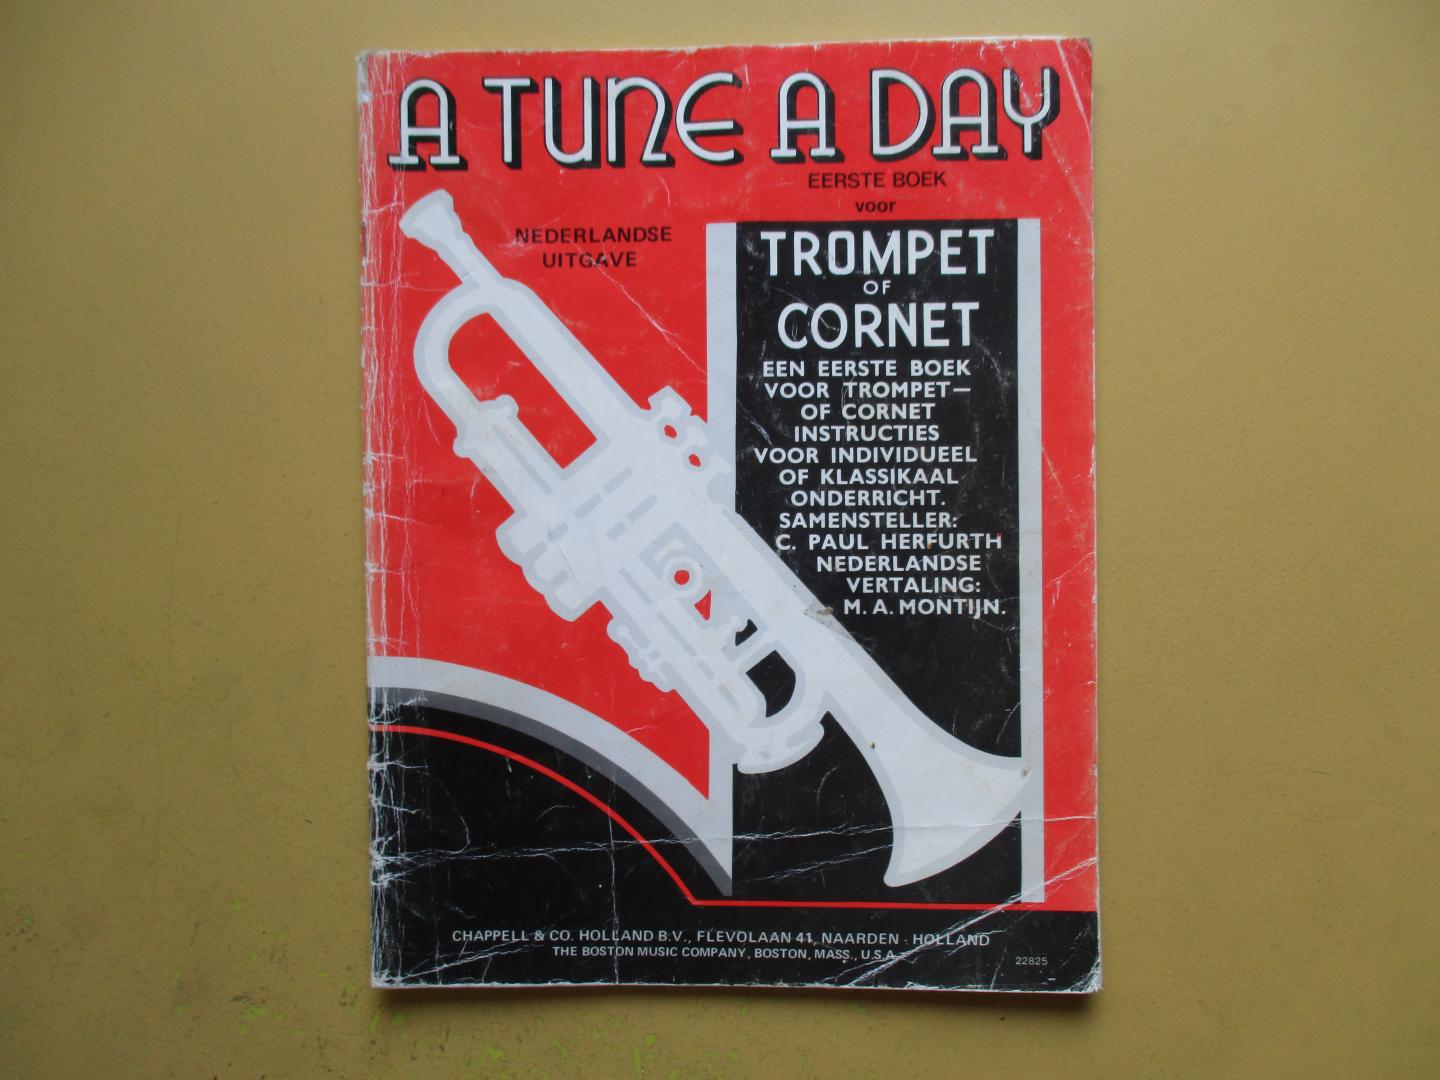 Herfurth, C. Paul - a tune a day eerste boek voor trompet of cornet